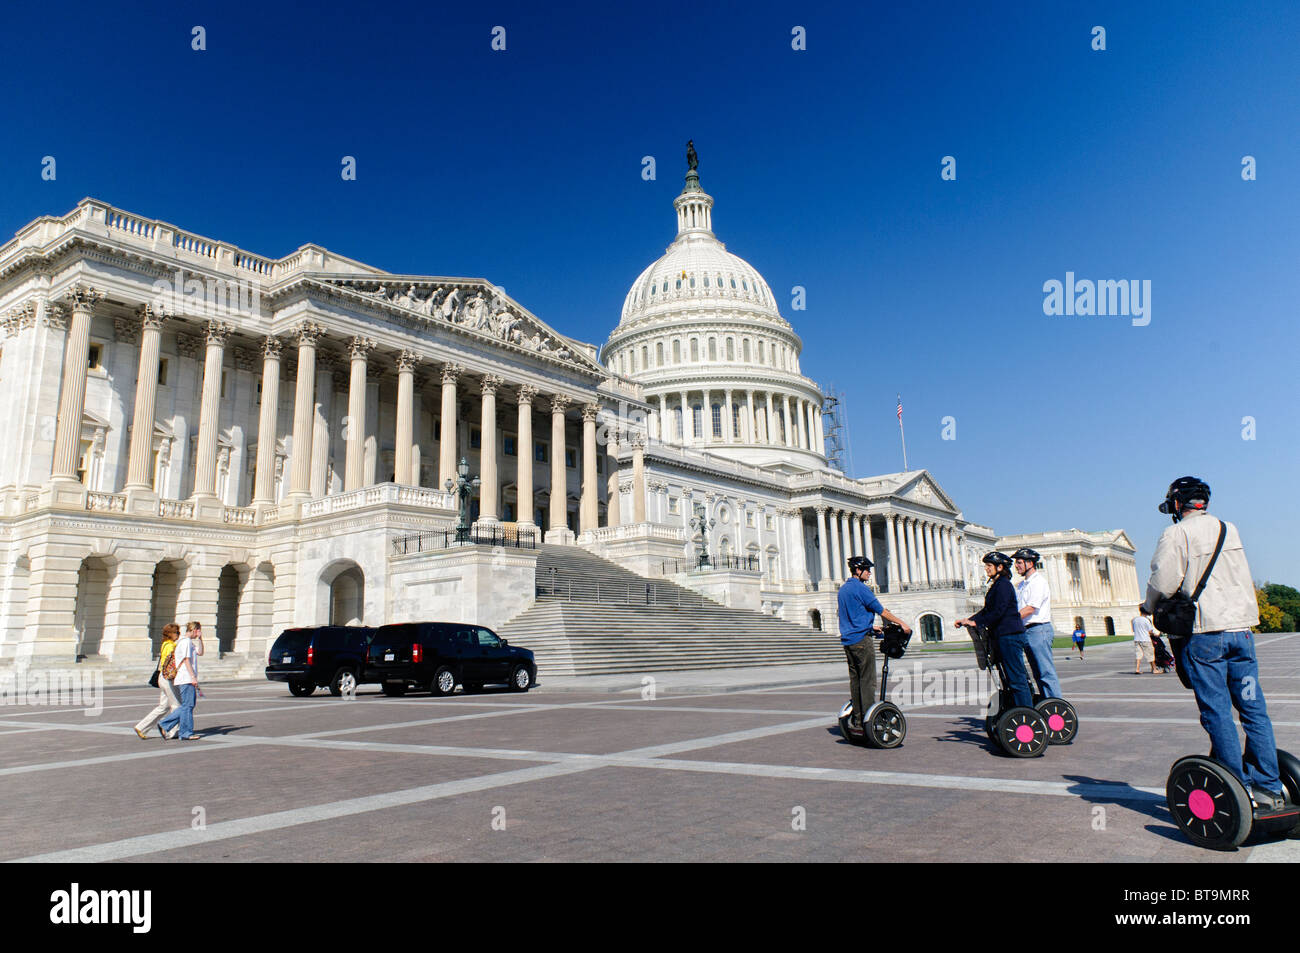 WASHINGTON DC, USA - eine Gruppe von Touristen auf Segways auf der Piazza vor dem US Capitol in Washington DC Stockfoto